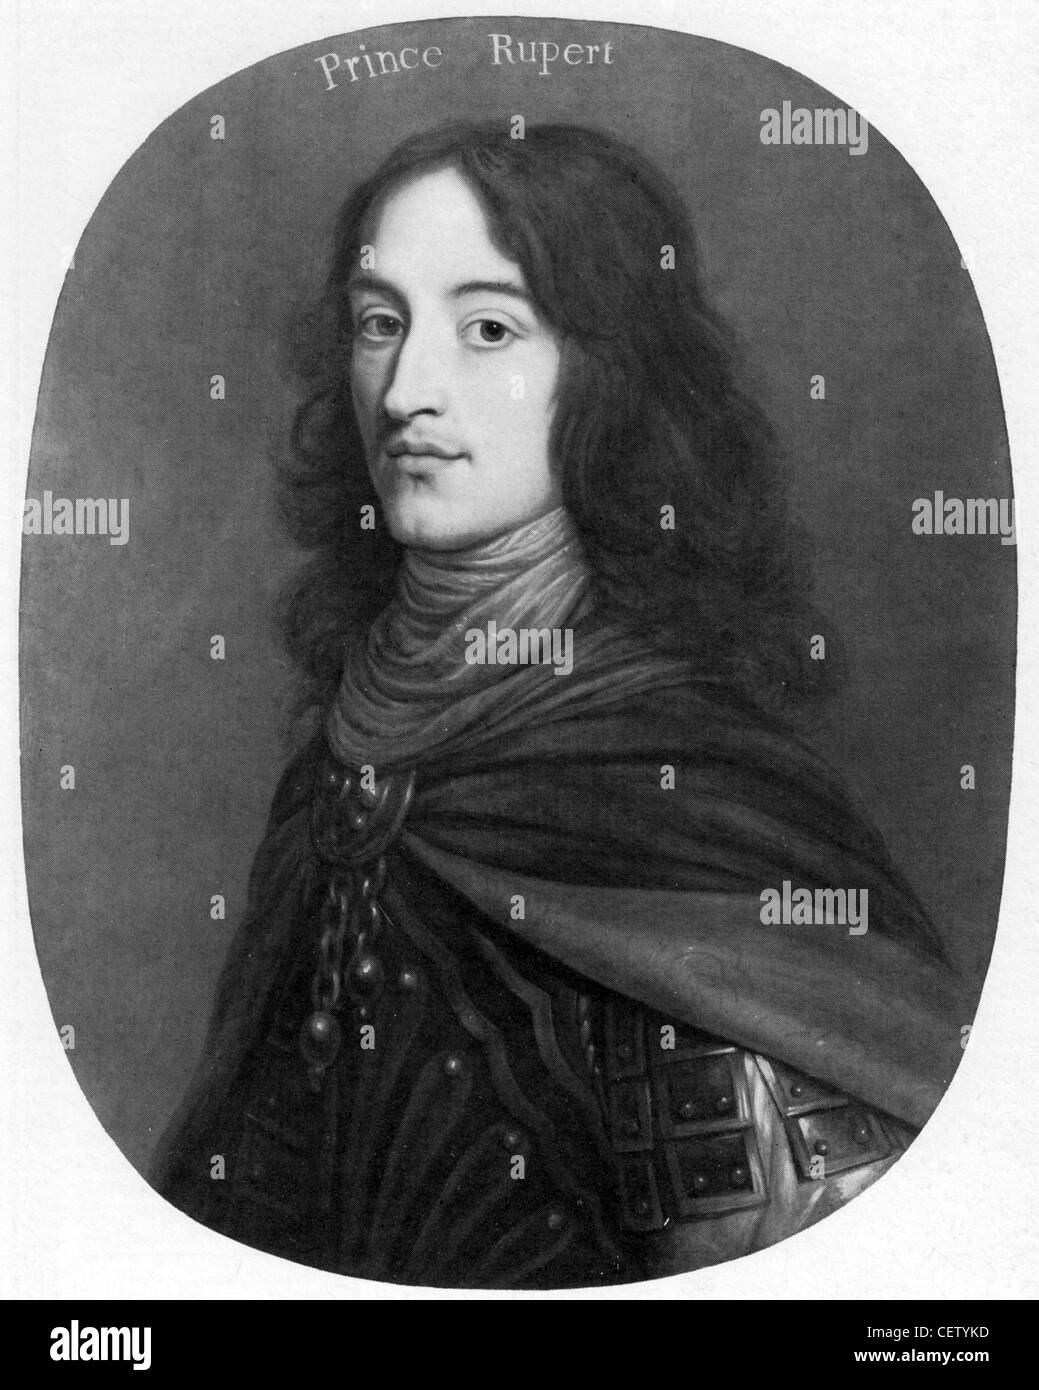 PRINCE RUPERT DU RHIN (1619-1682), soldat allemand, scientifique et l'artiste qui a joué un rôle important dans les Wa Banque D'Images